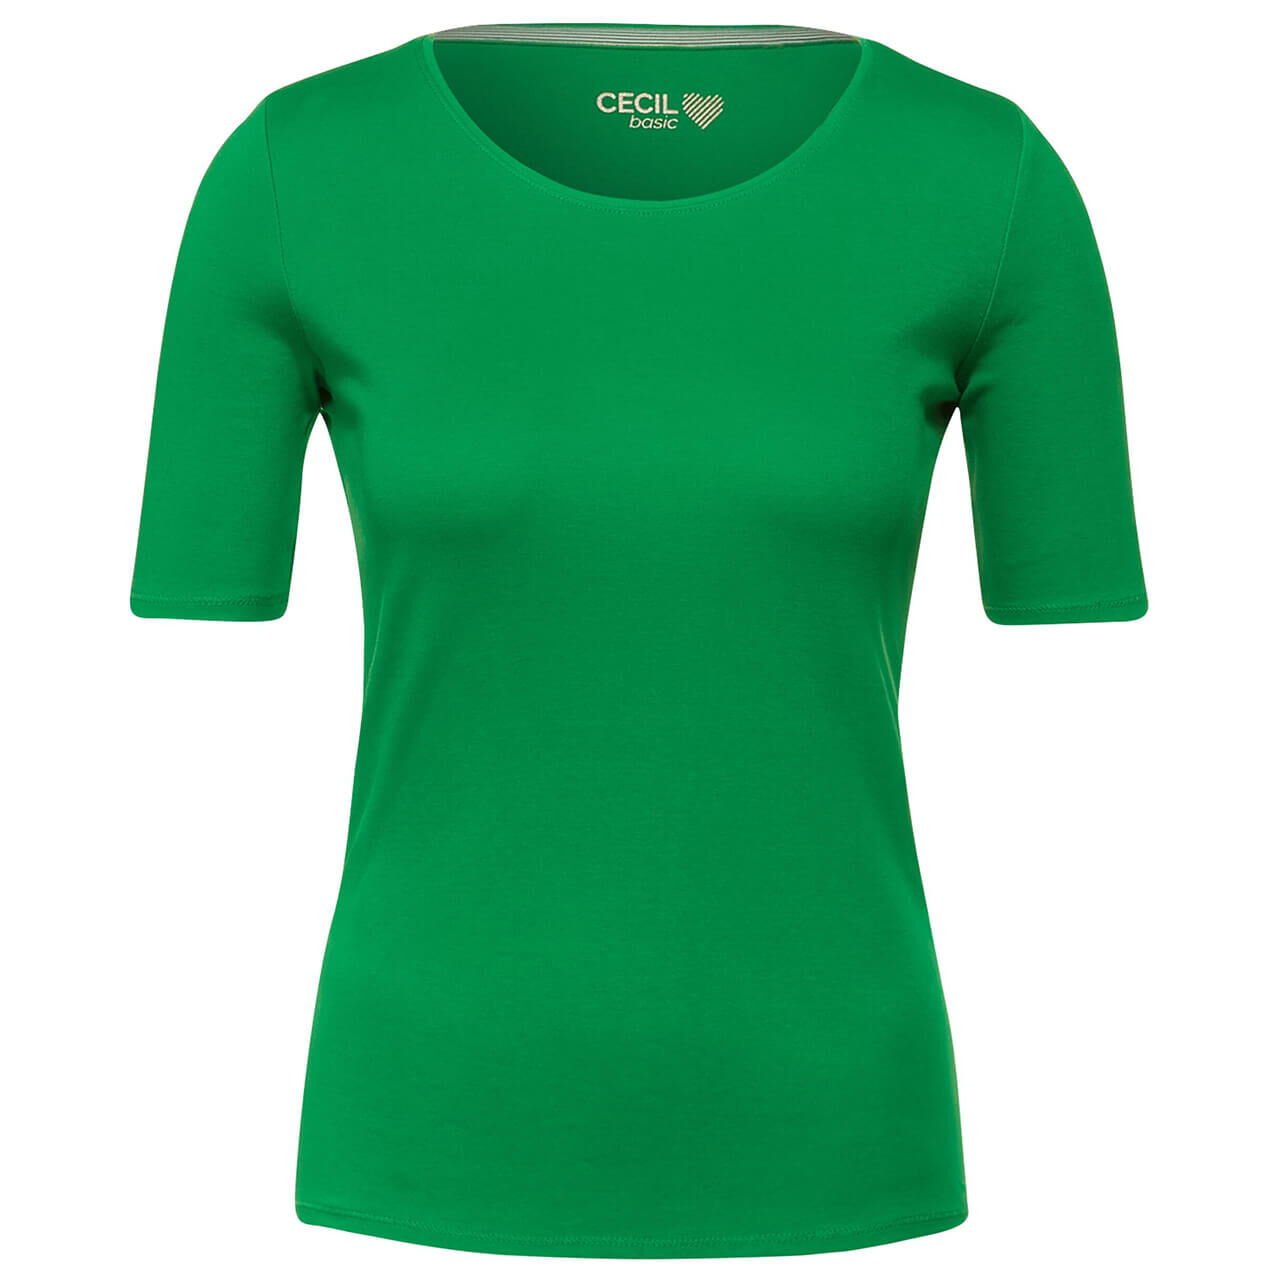 Cecil Lena T-Shirt für Damen in Grasgrün, FarbNr.: 13755